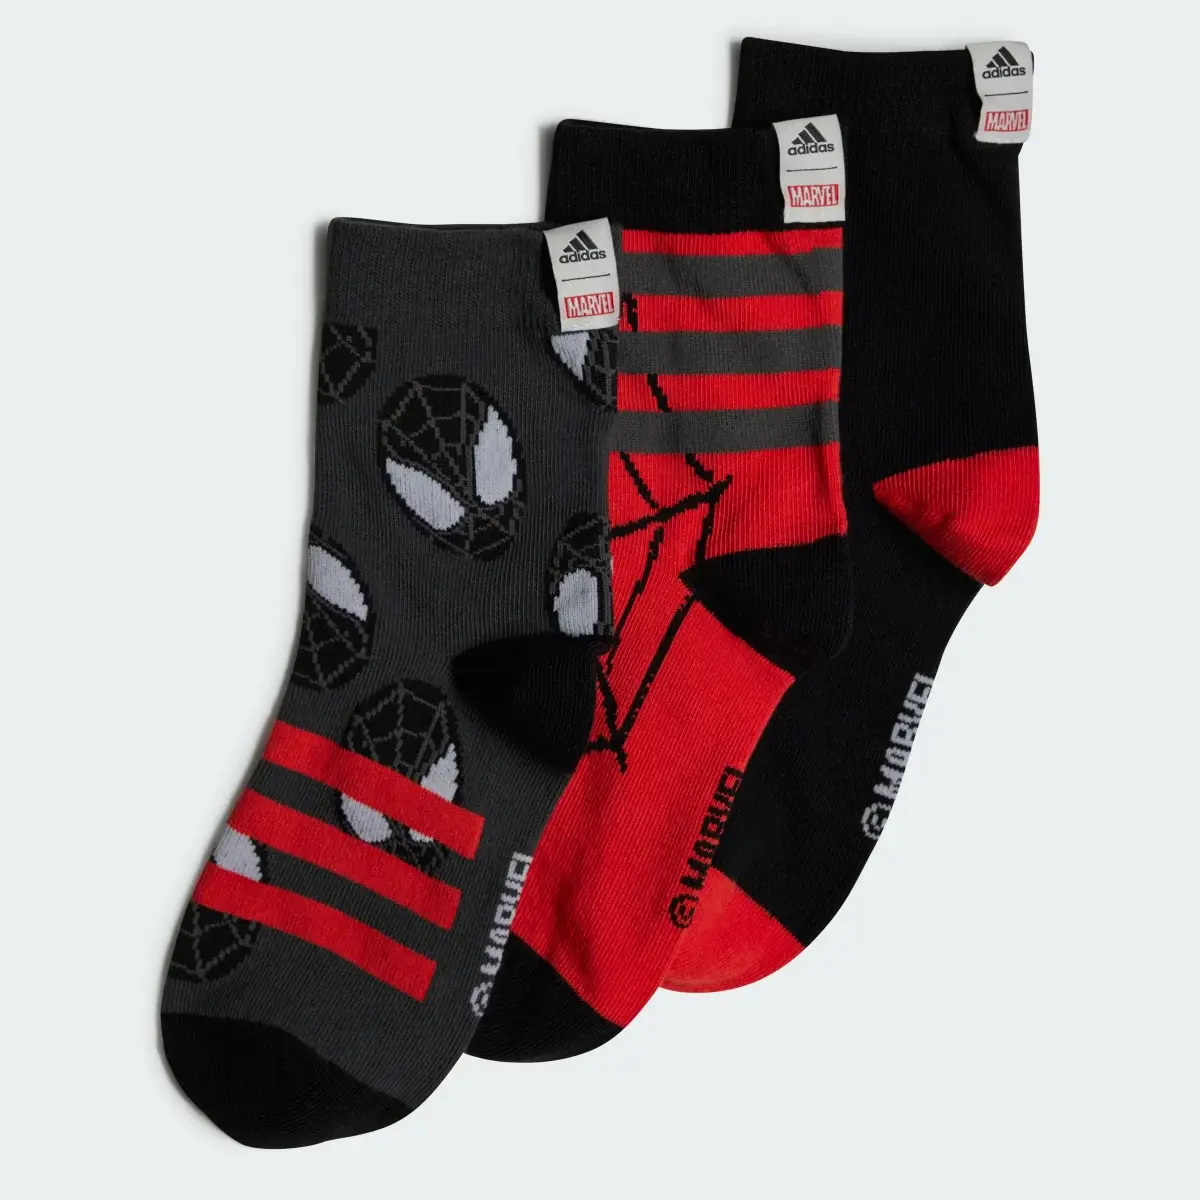 Adidas Marvel Spider-Man Crew Socken, 3 Paar. 1